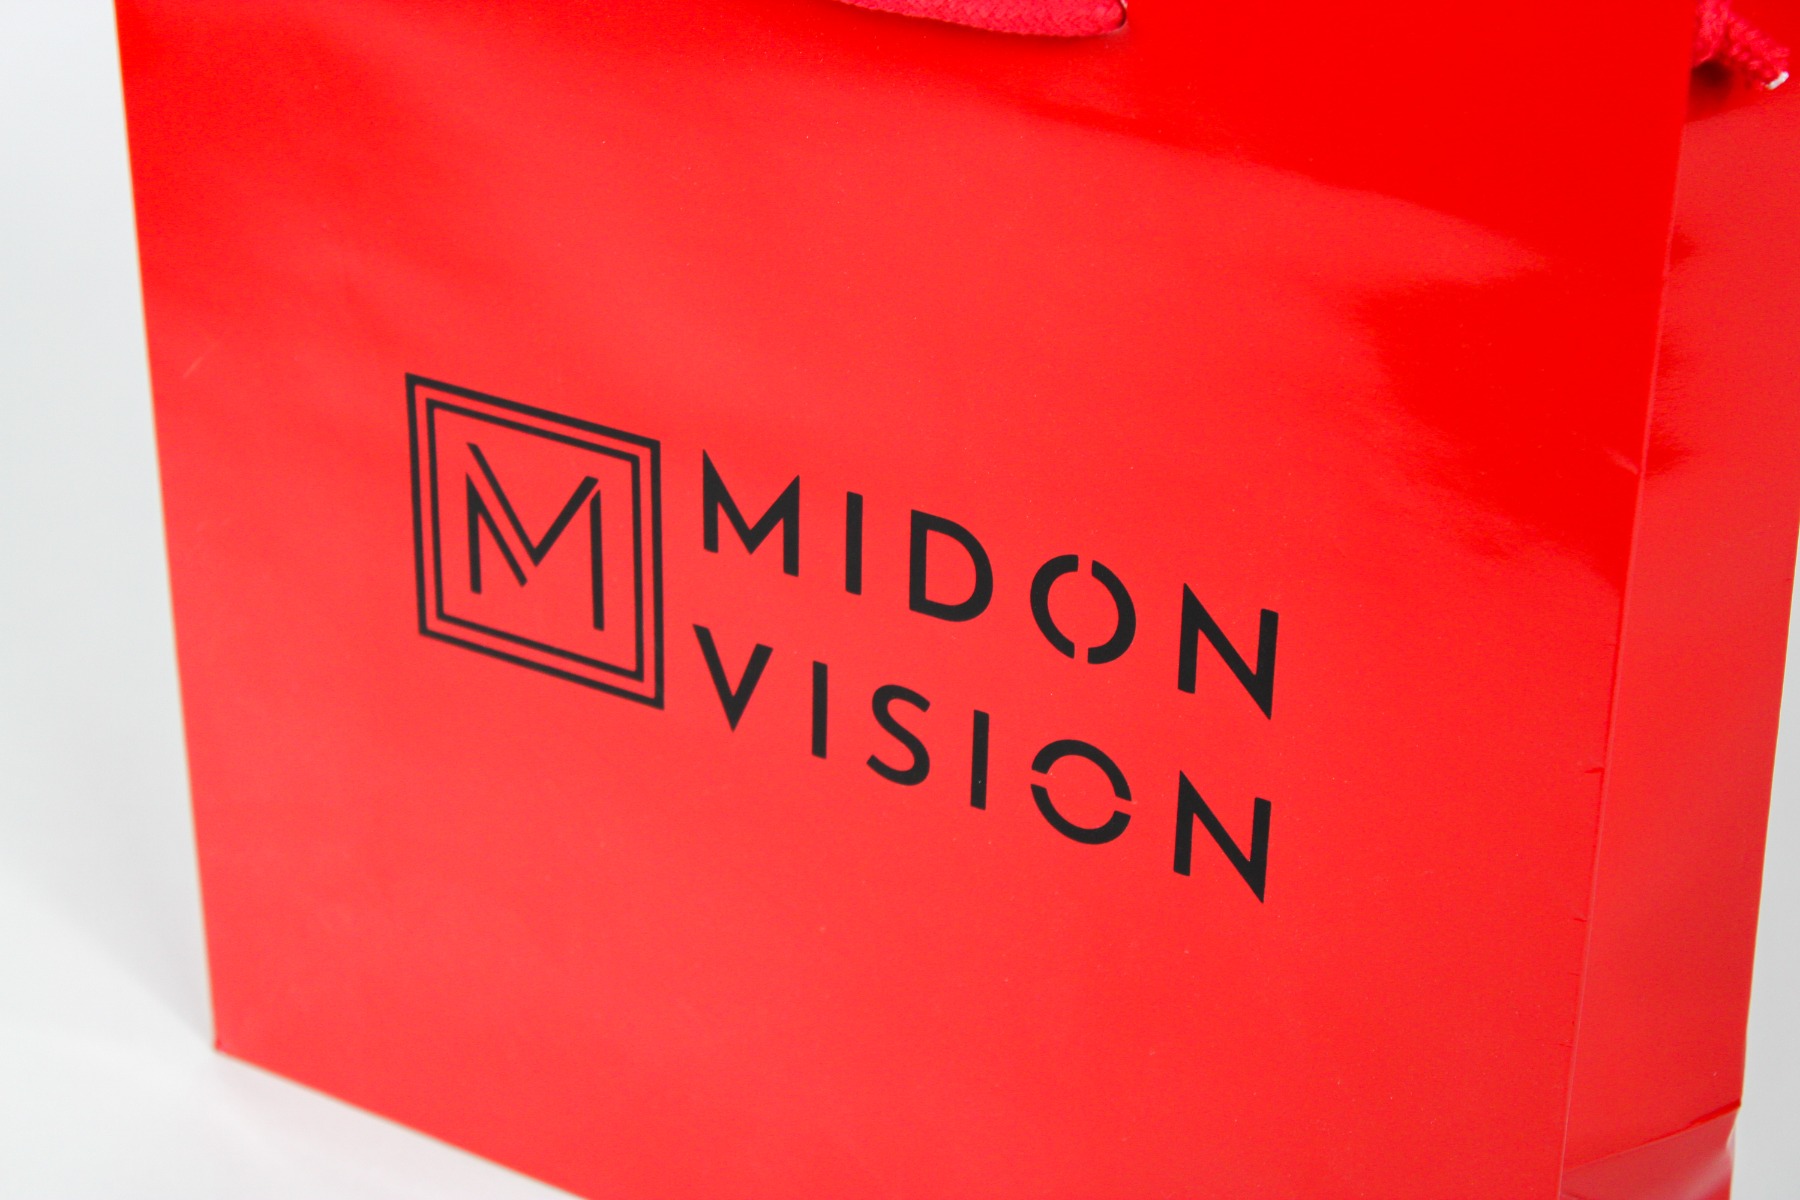 Midon Vision